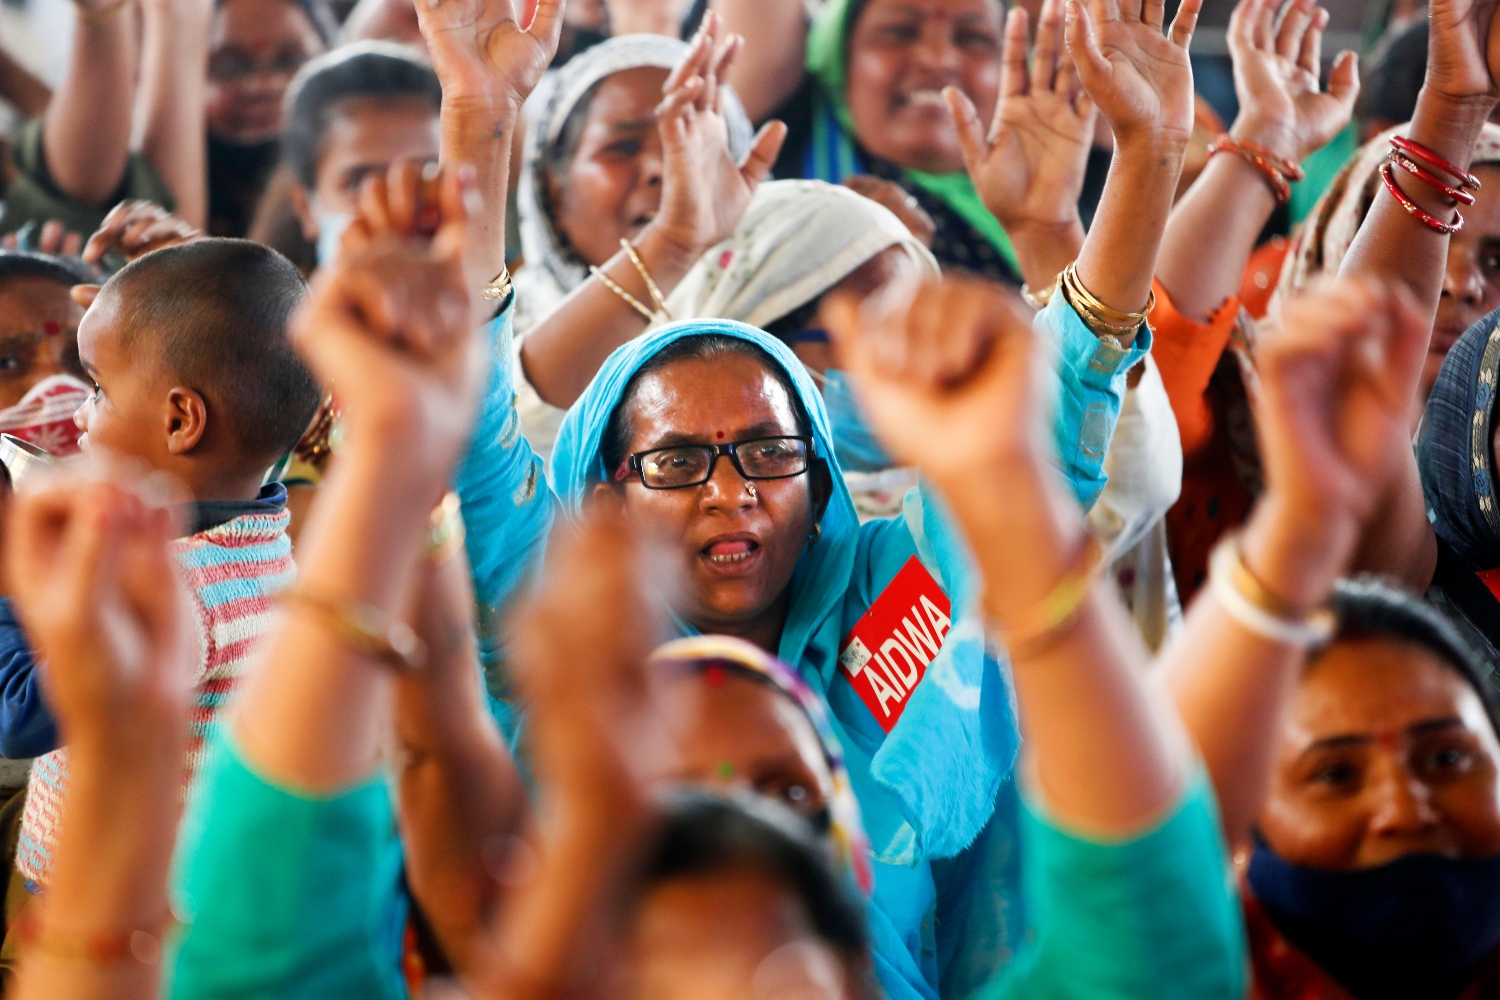 Ινδία: Αναγνωρίστηκε επιτέλους το δικαίωμα στην άμβλωση για όλες τις γυναίκες